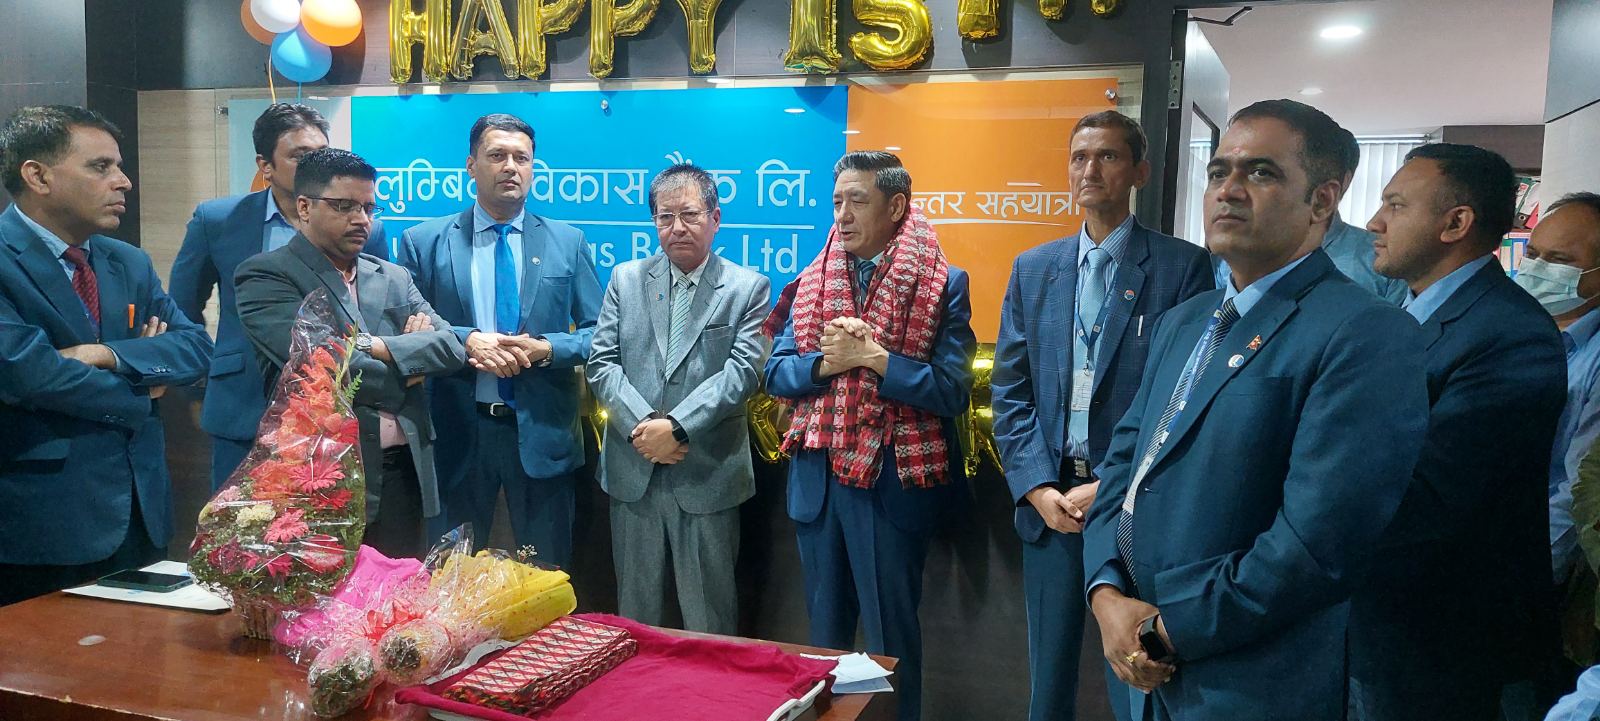 लुम्बिनी विकास बैंकमा नरेश सिंह बोहराको दोस्रो कार्यकालको पदबहाली